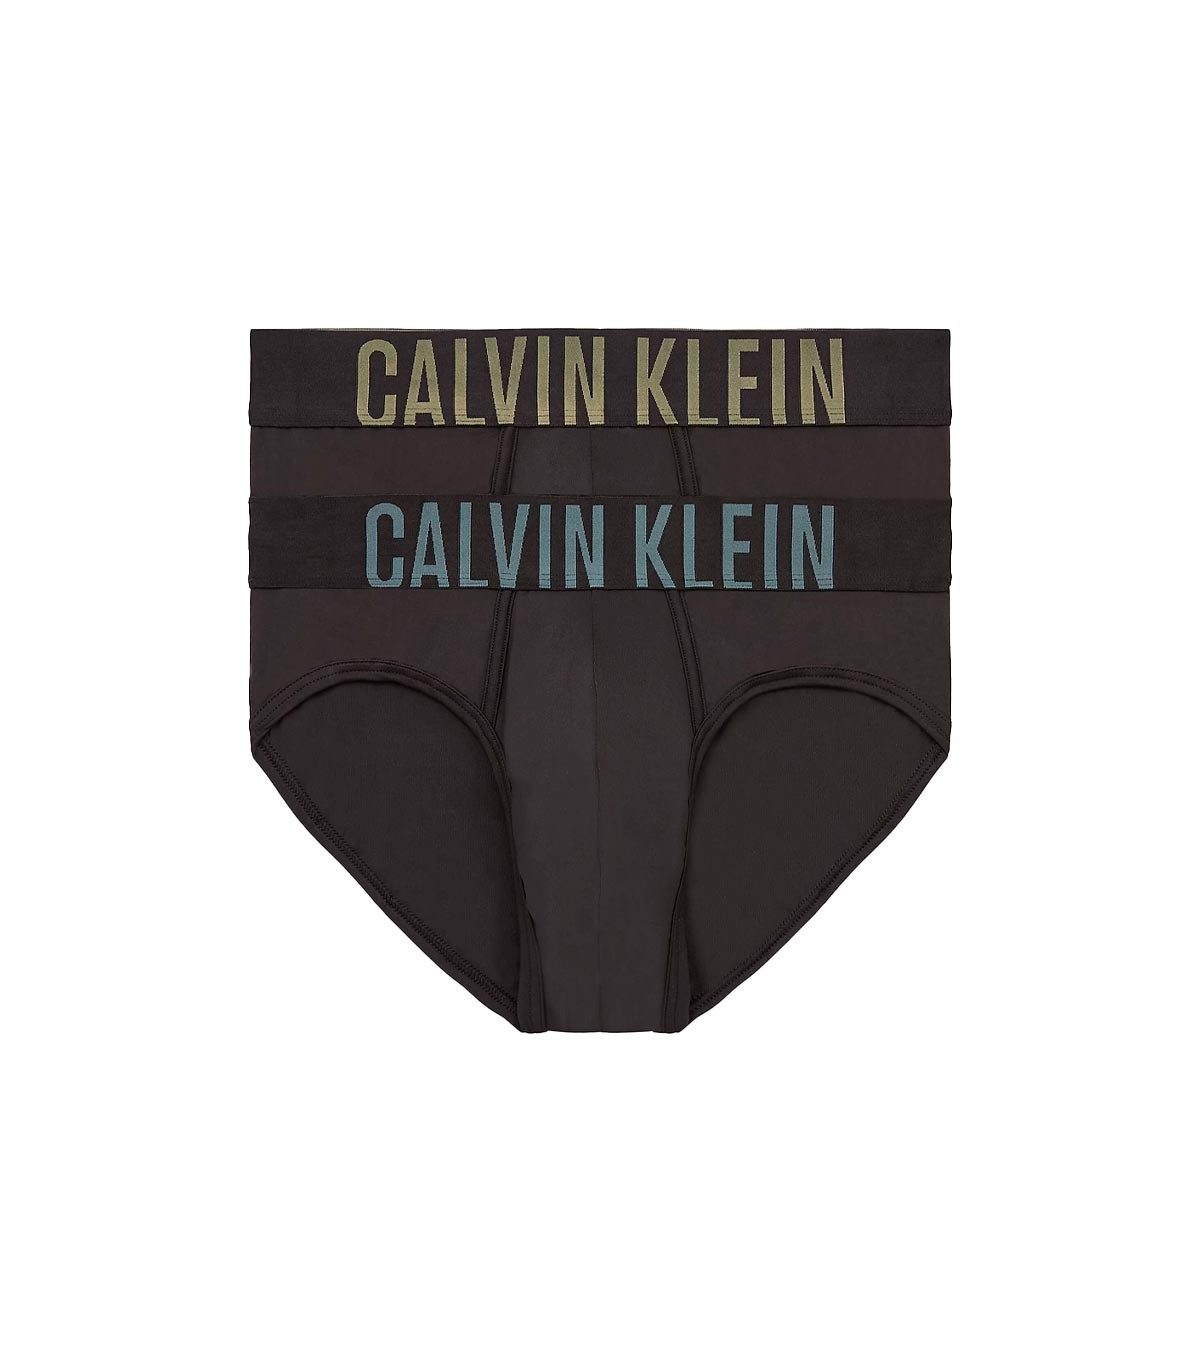 Calvin Klein - Calzoncillo Slips Intense Power - Blanco